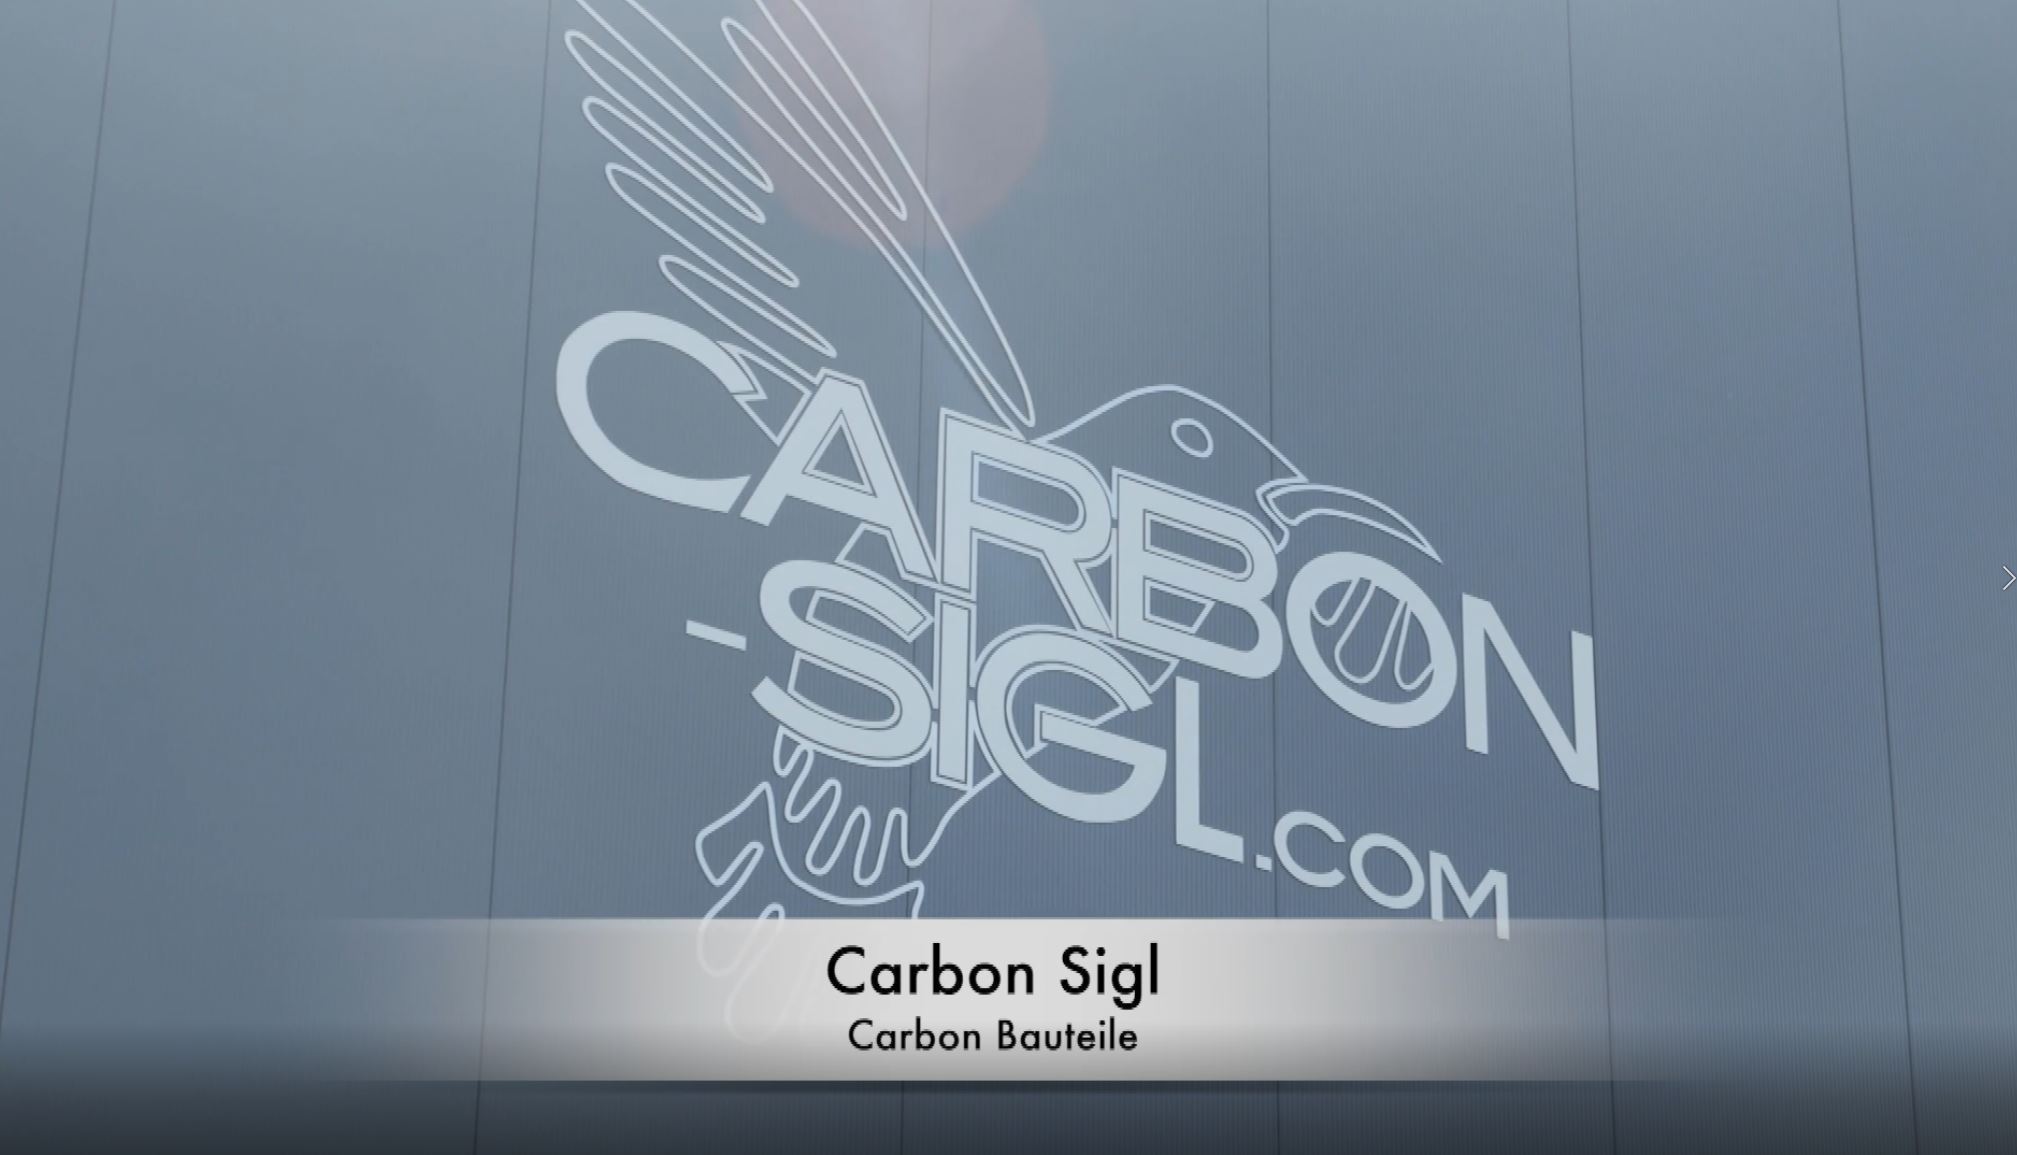 zur externen Seite: Carbon Sigl GmbH | Exklusive und innovative Carbon-Bauteile - unter www.youtube.com